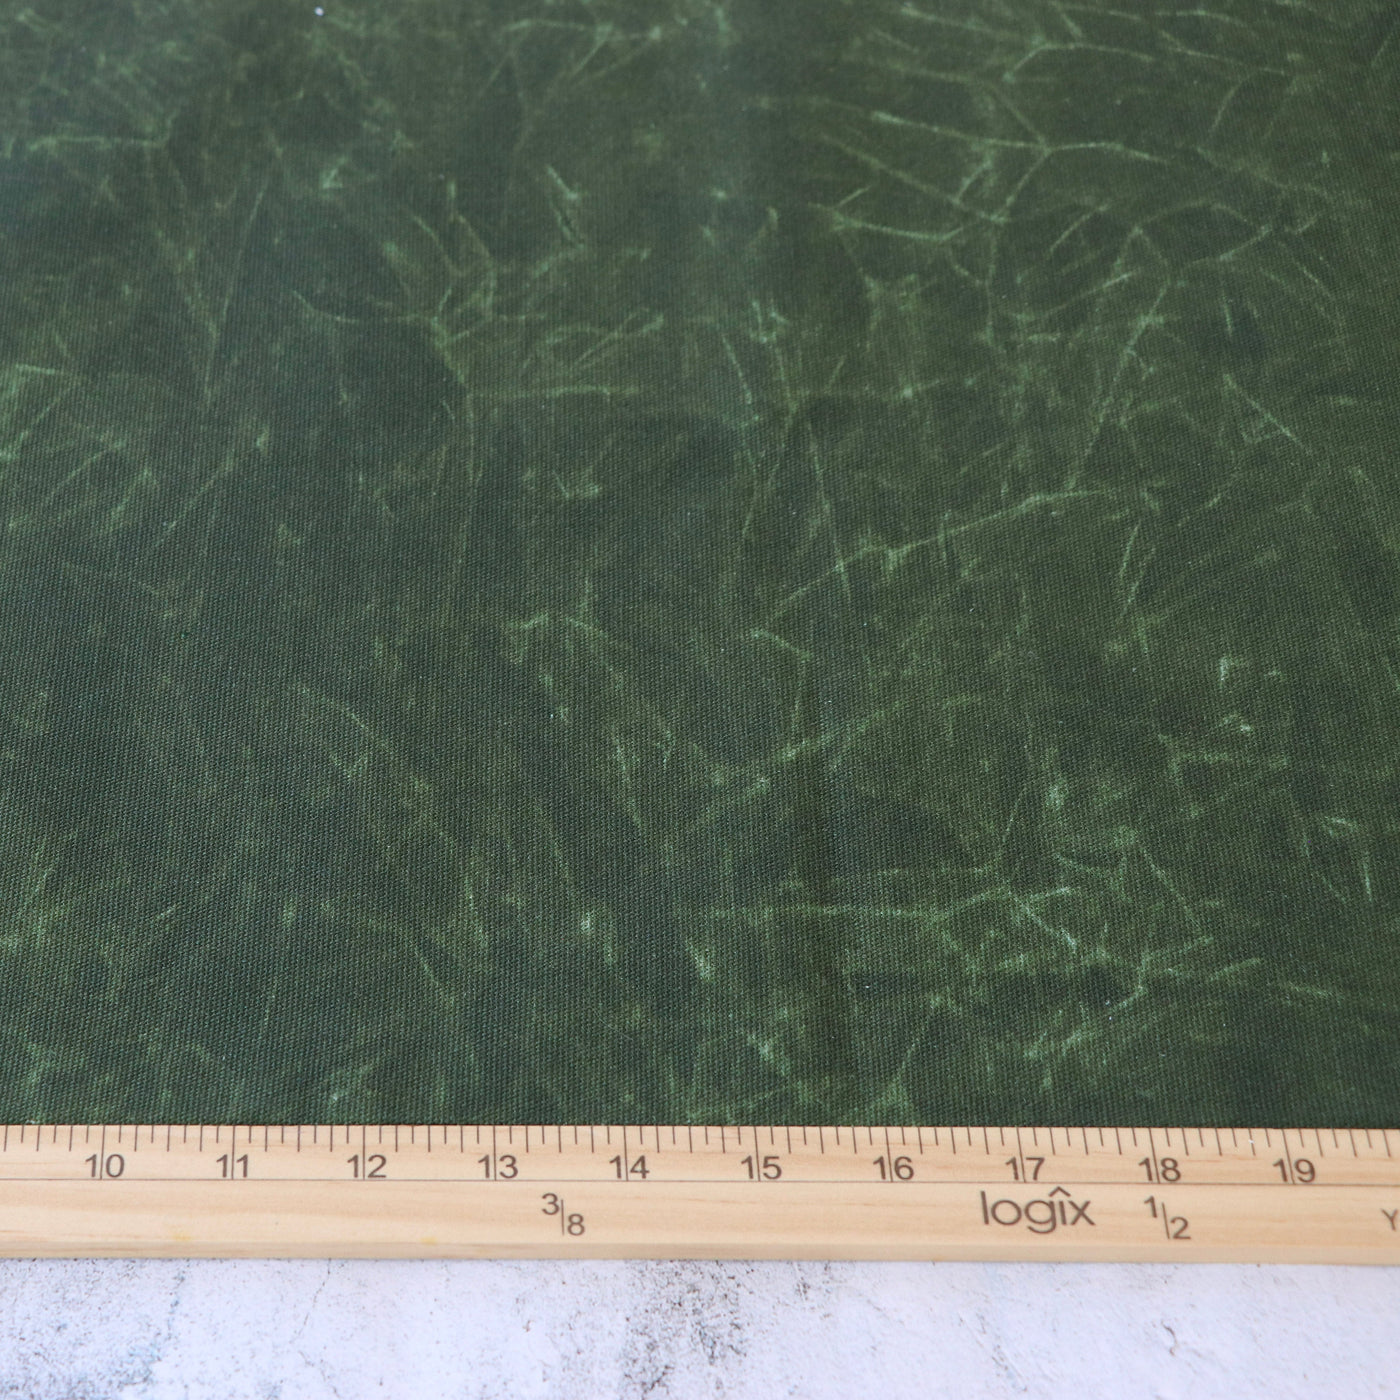 Lona de pato encerada sintética color verde oliva, cortes de 15 yardas